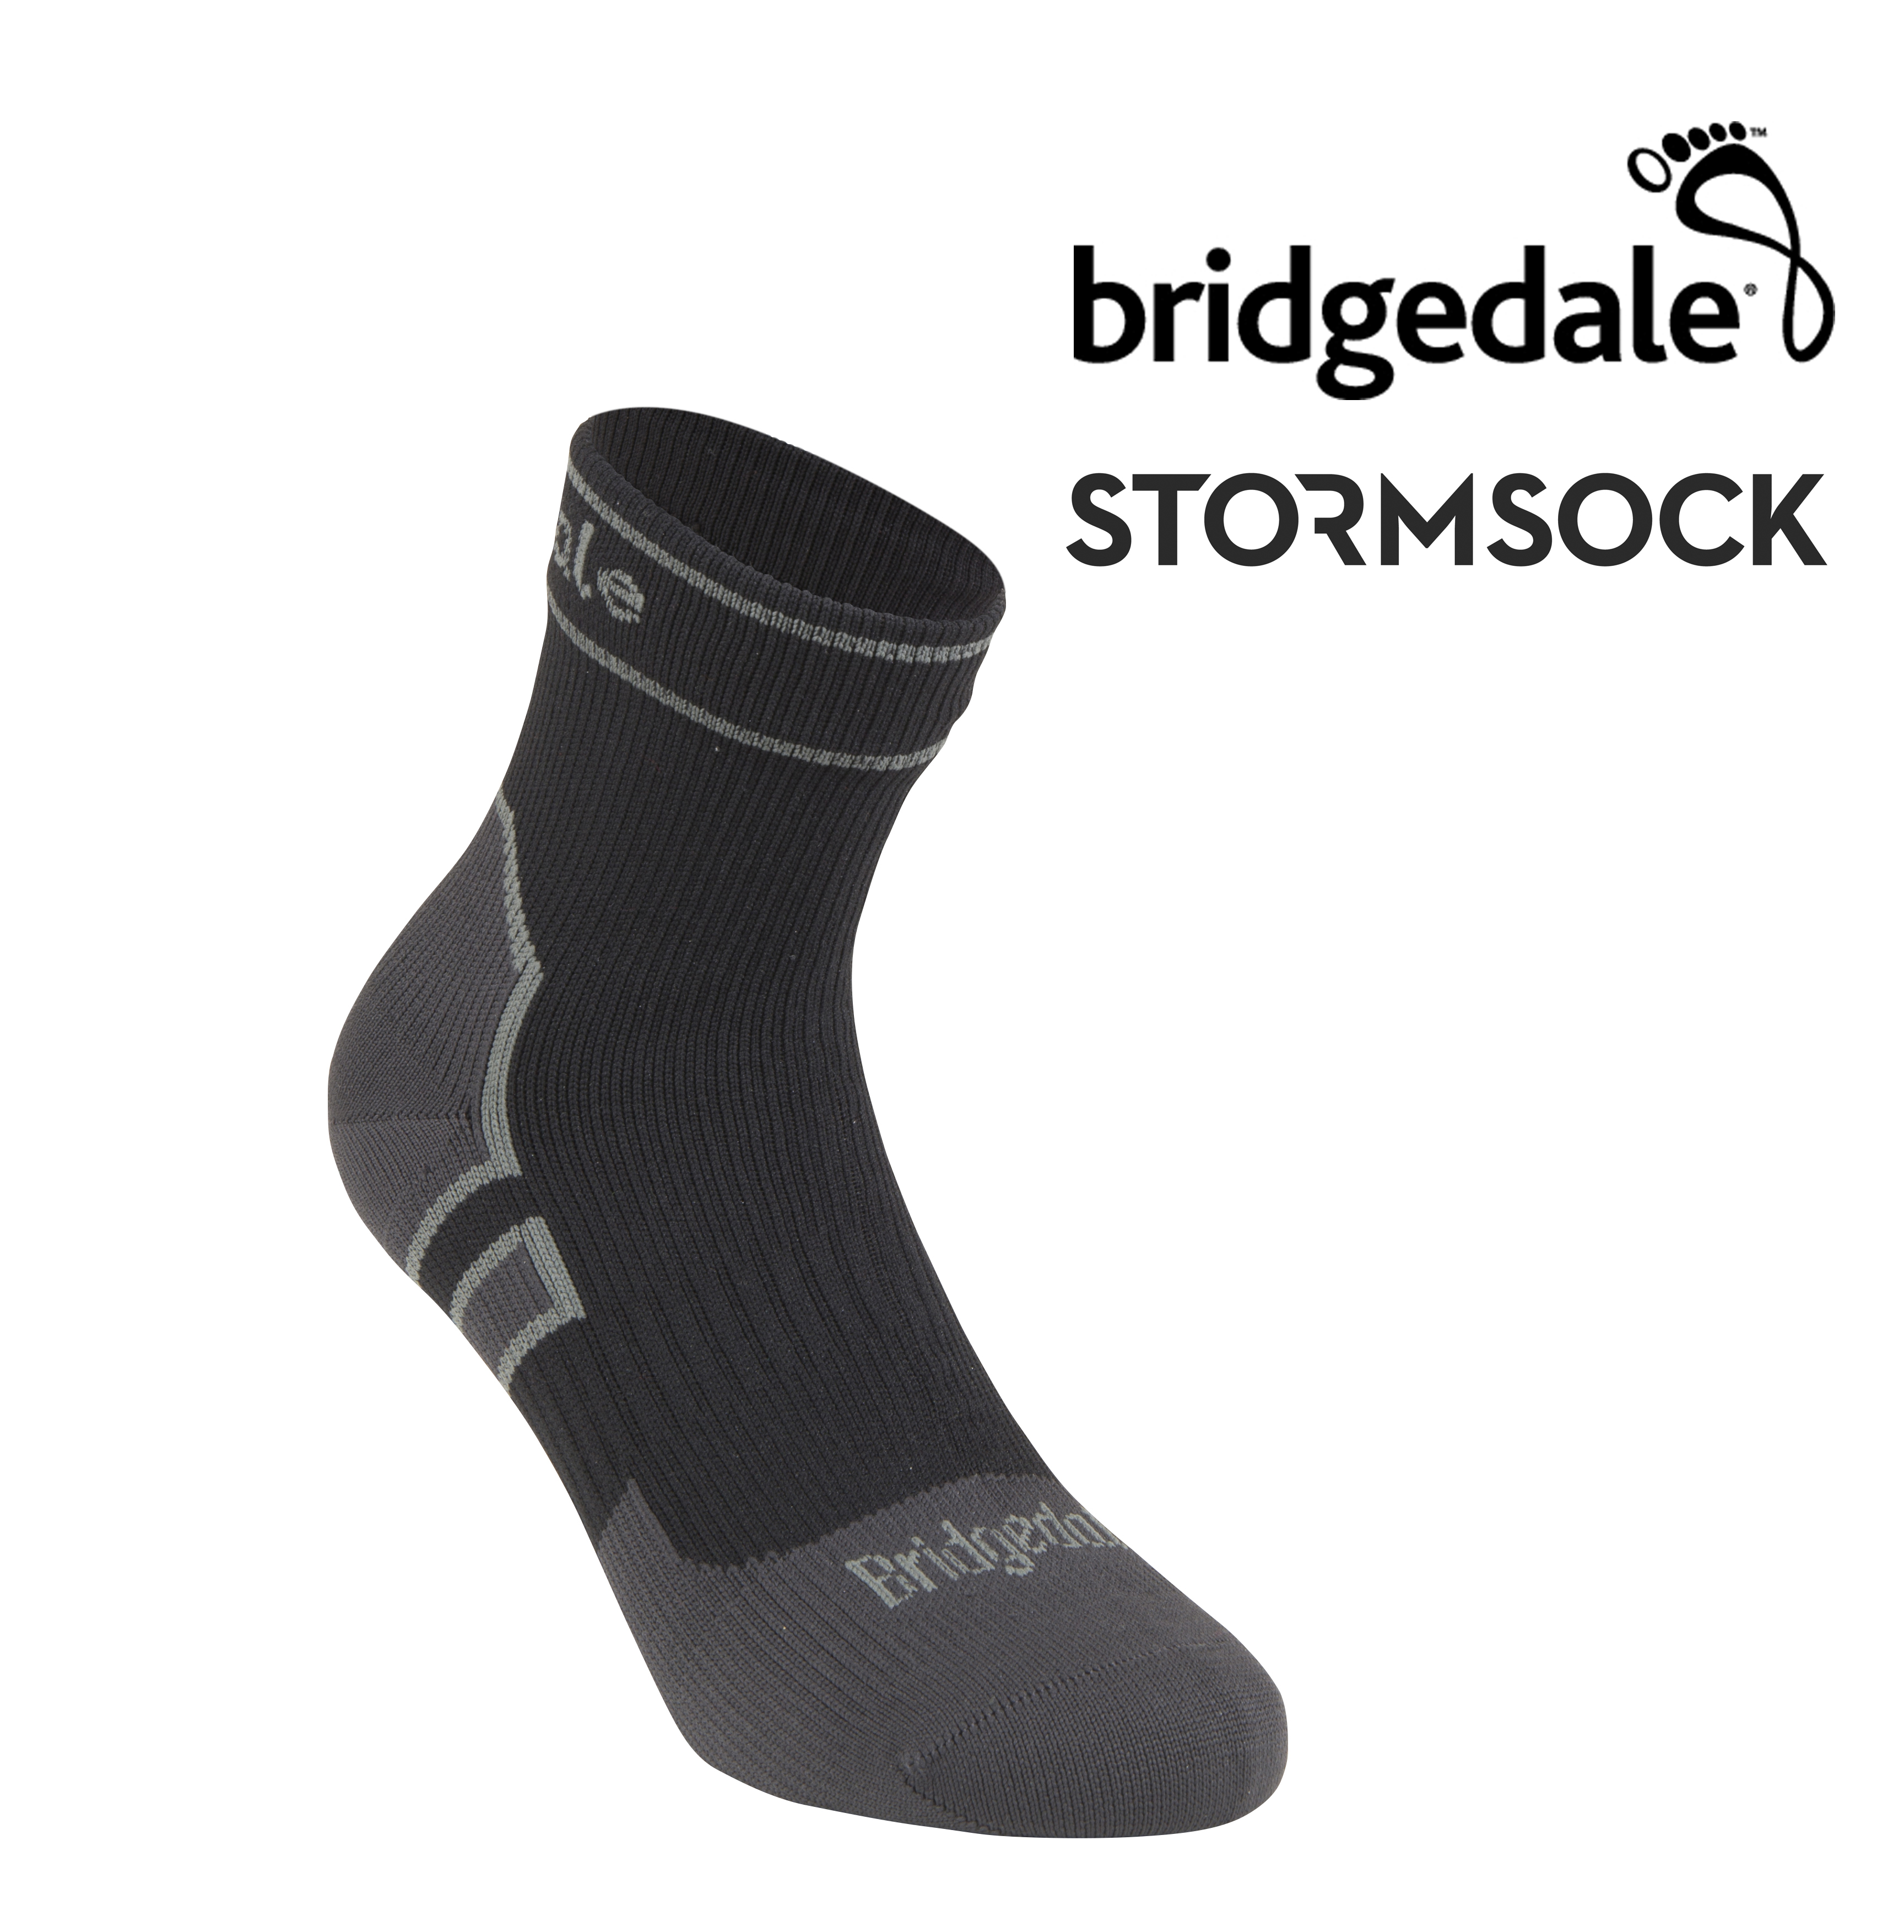 Bridgedale Stormsock Heavyweight Waterproof Boot Socks